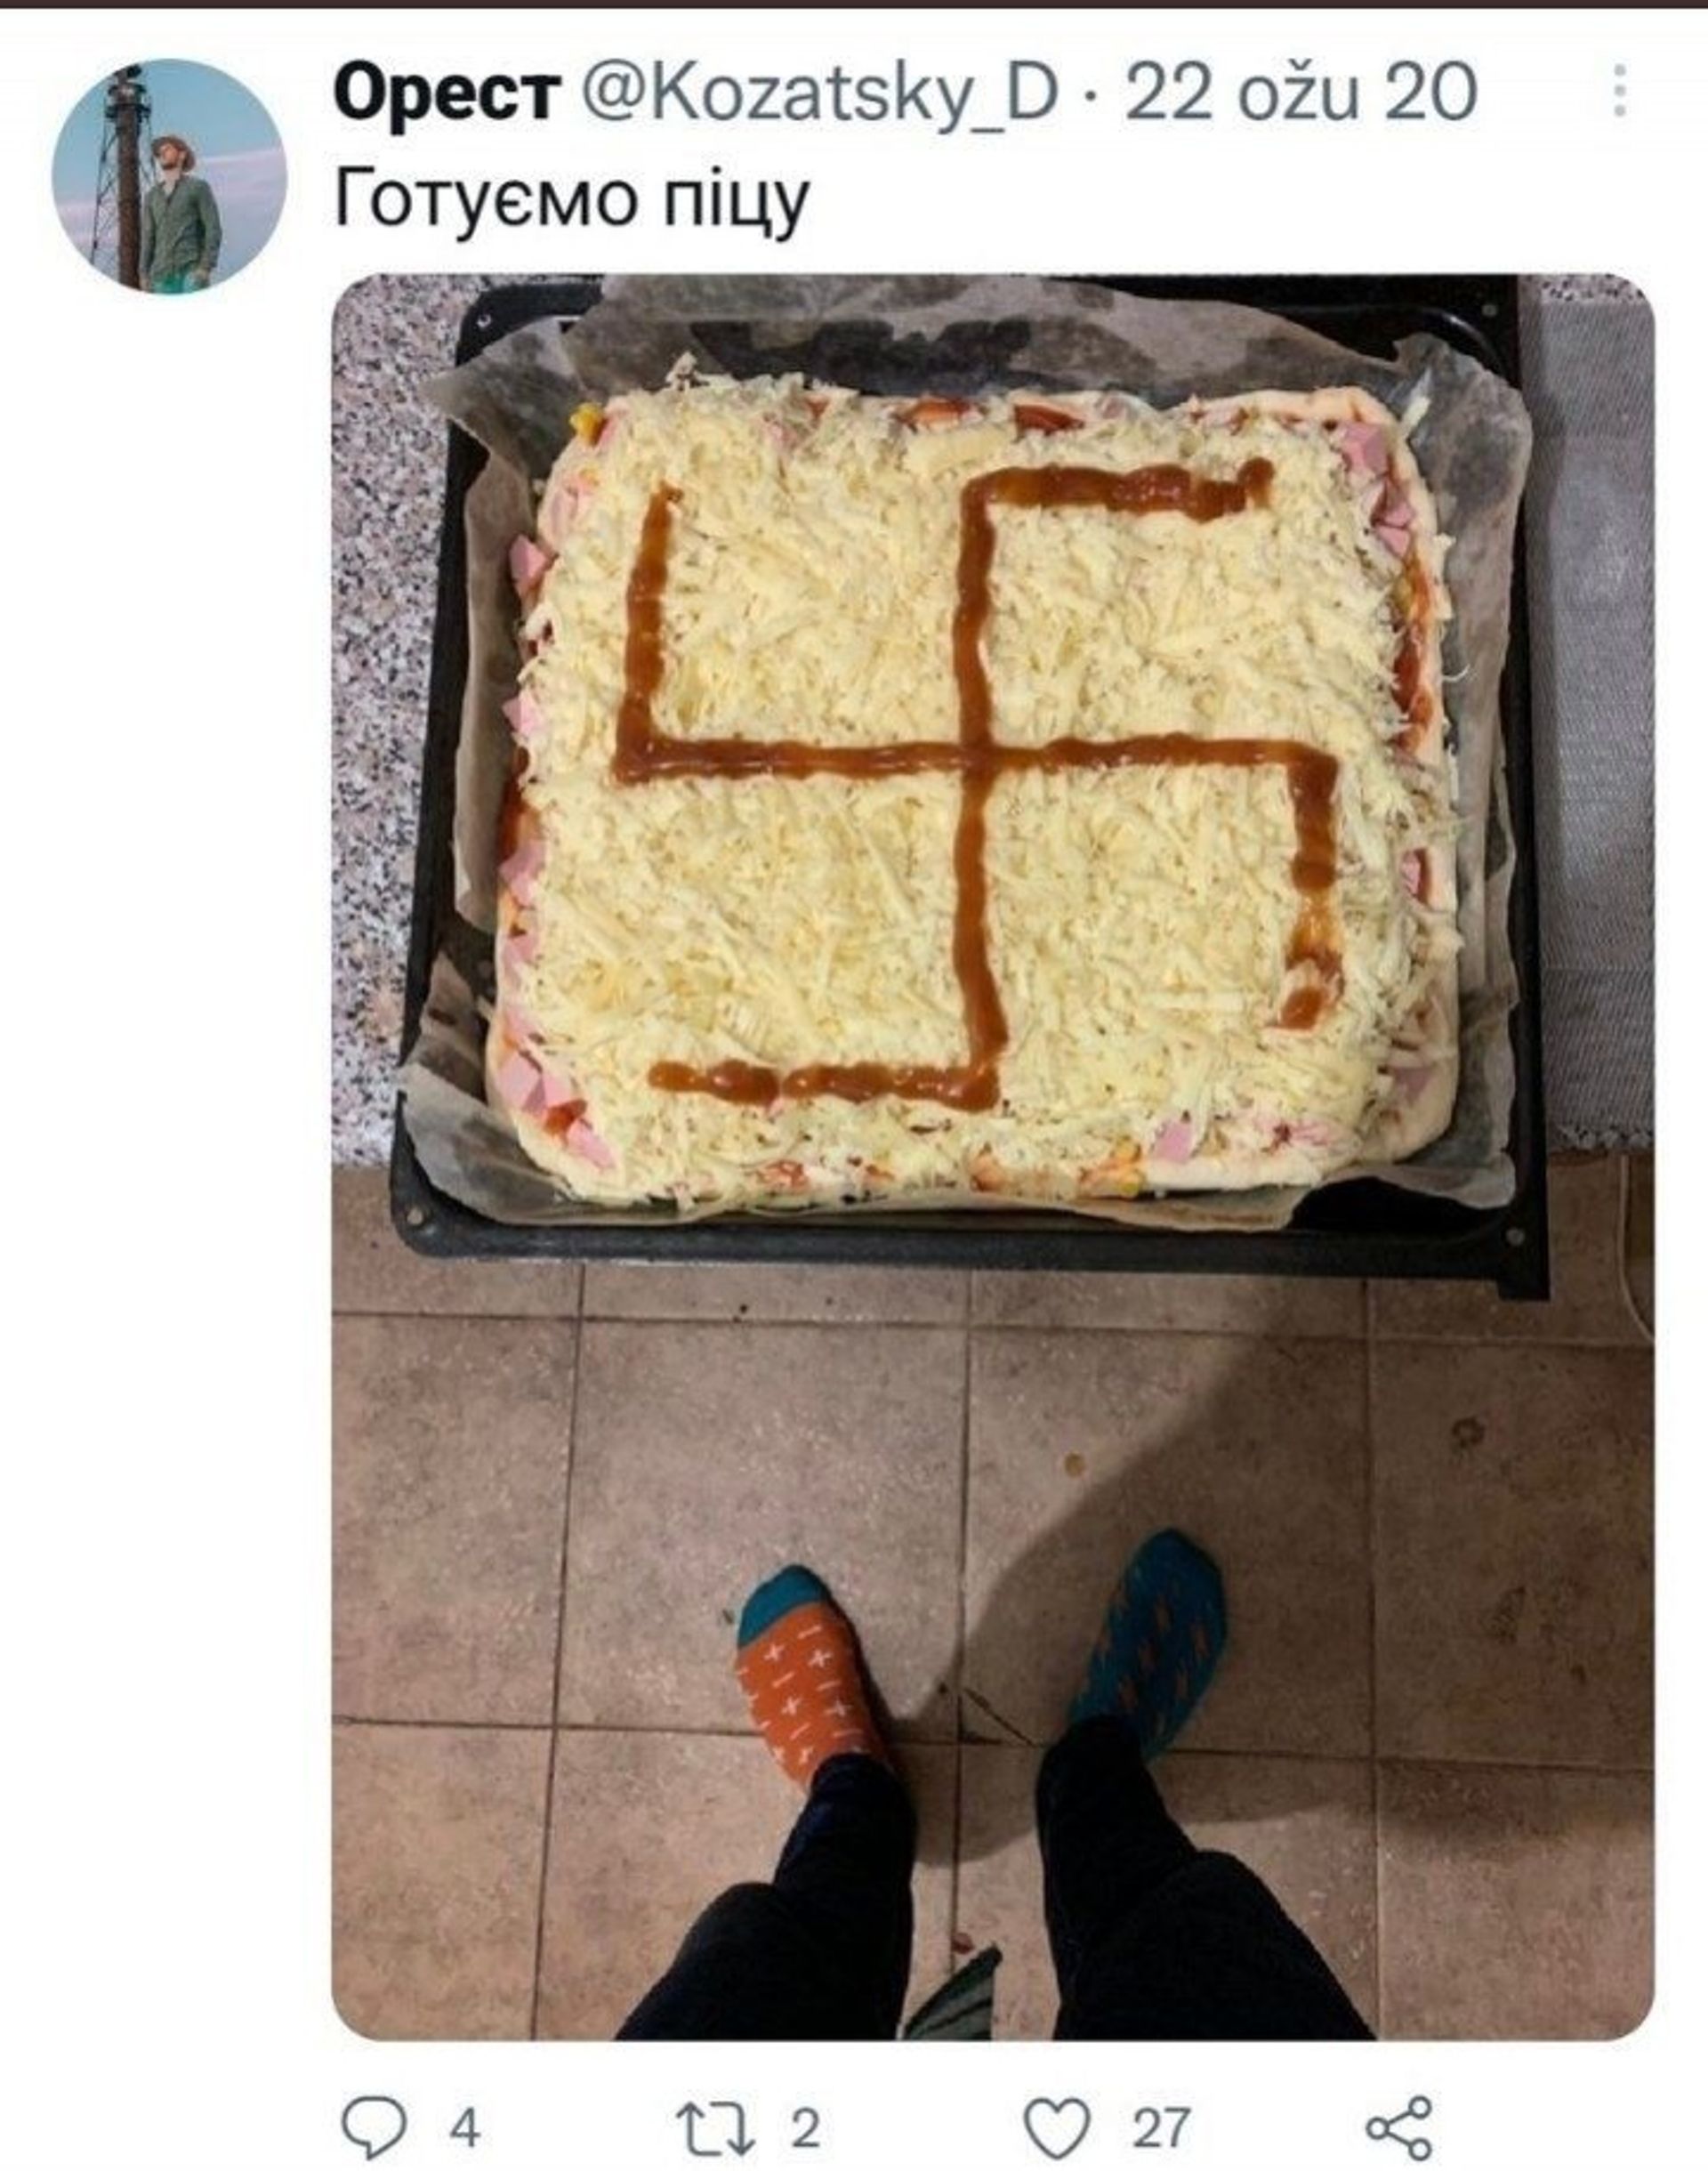 Le tweet avec la photo de la pizza garnie d'une croix gammée. 